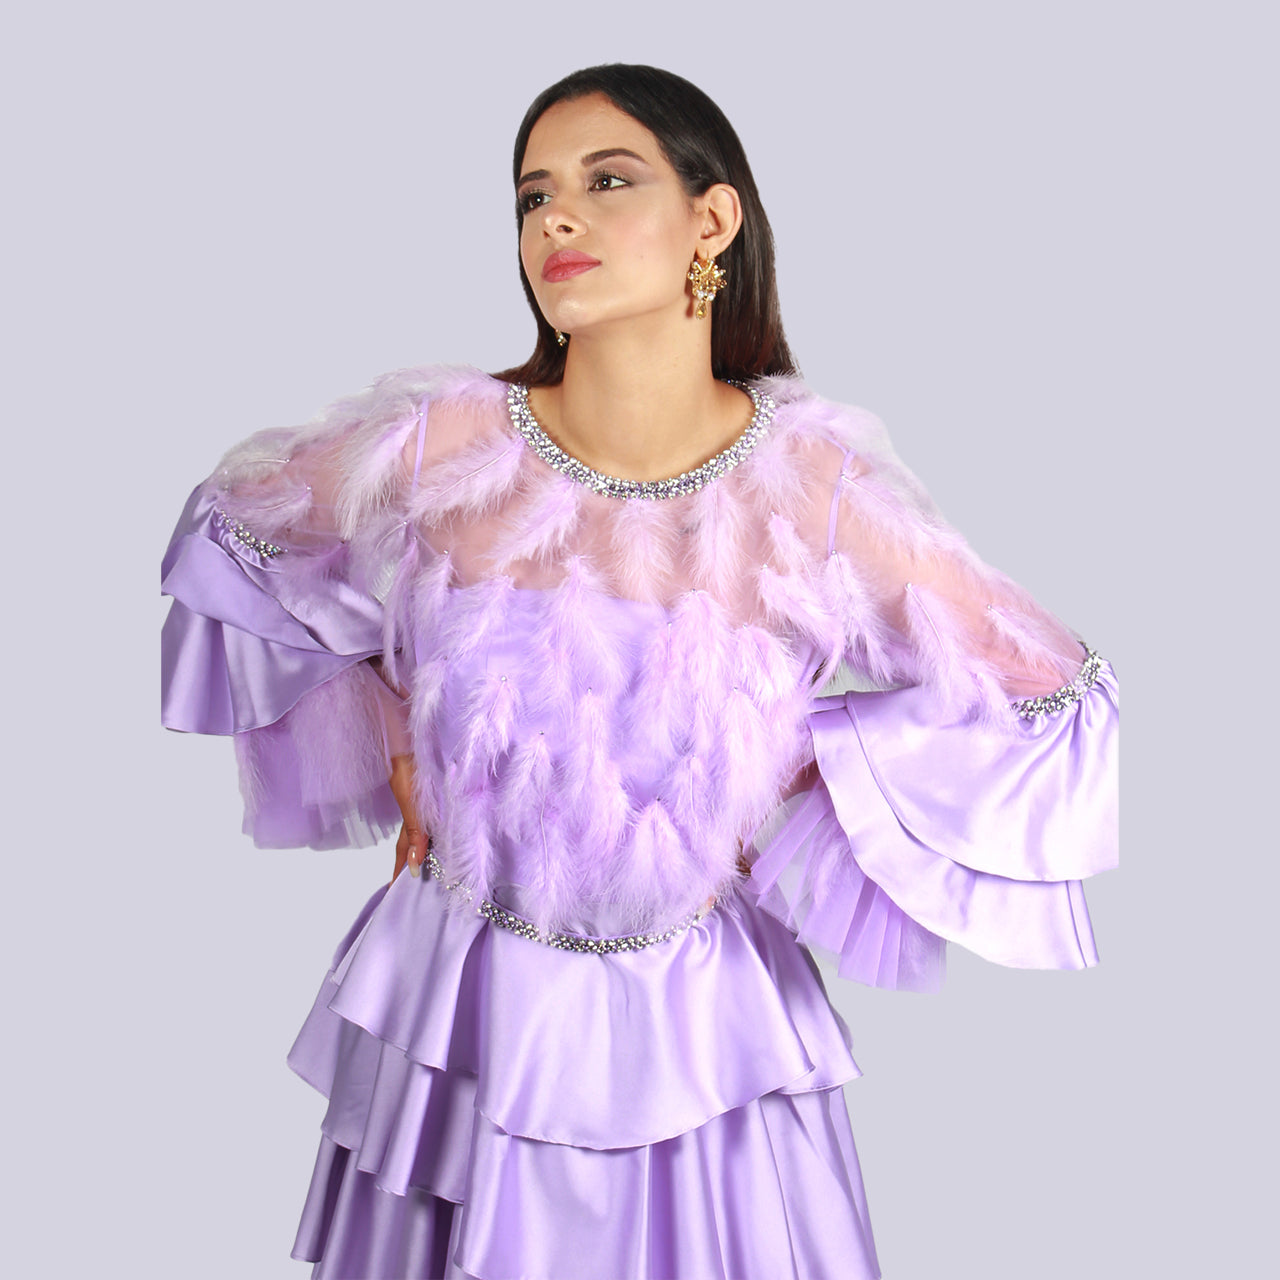 Senorita - Enchanted Feathers Tiered Ruffle Dress